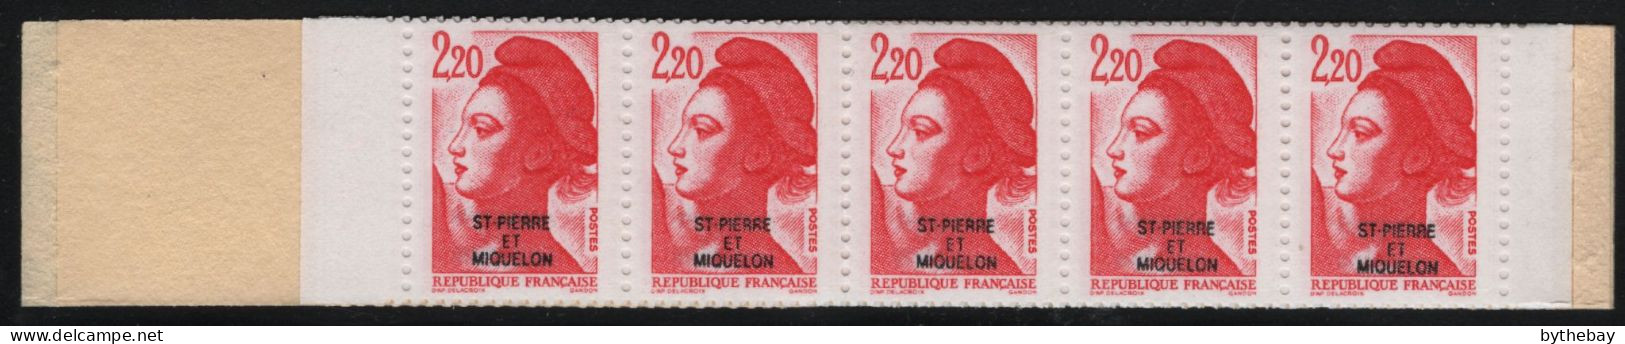 St Pierre Et Miquelon 1986 MNH Sc 462 2.20fr Marianne O/P Booklet (1) - Booklets